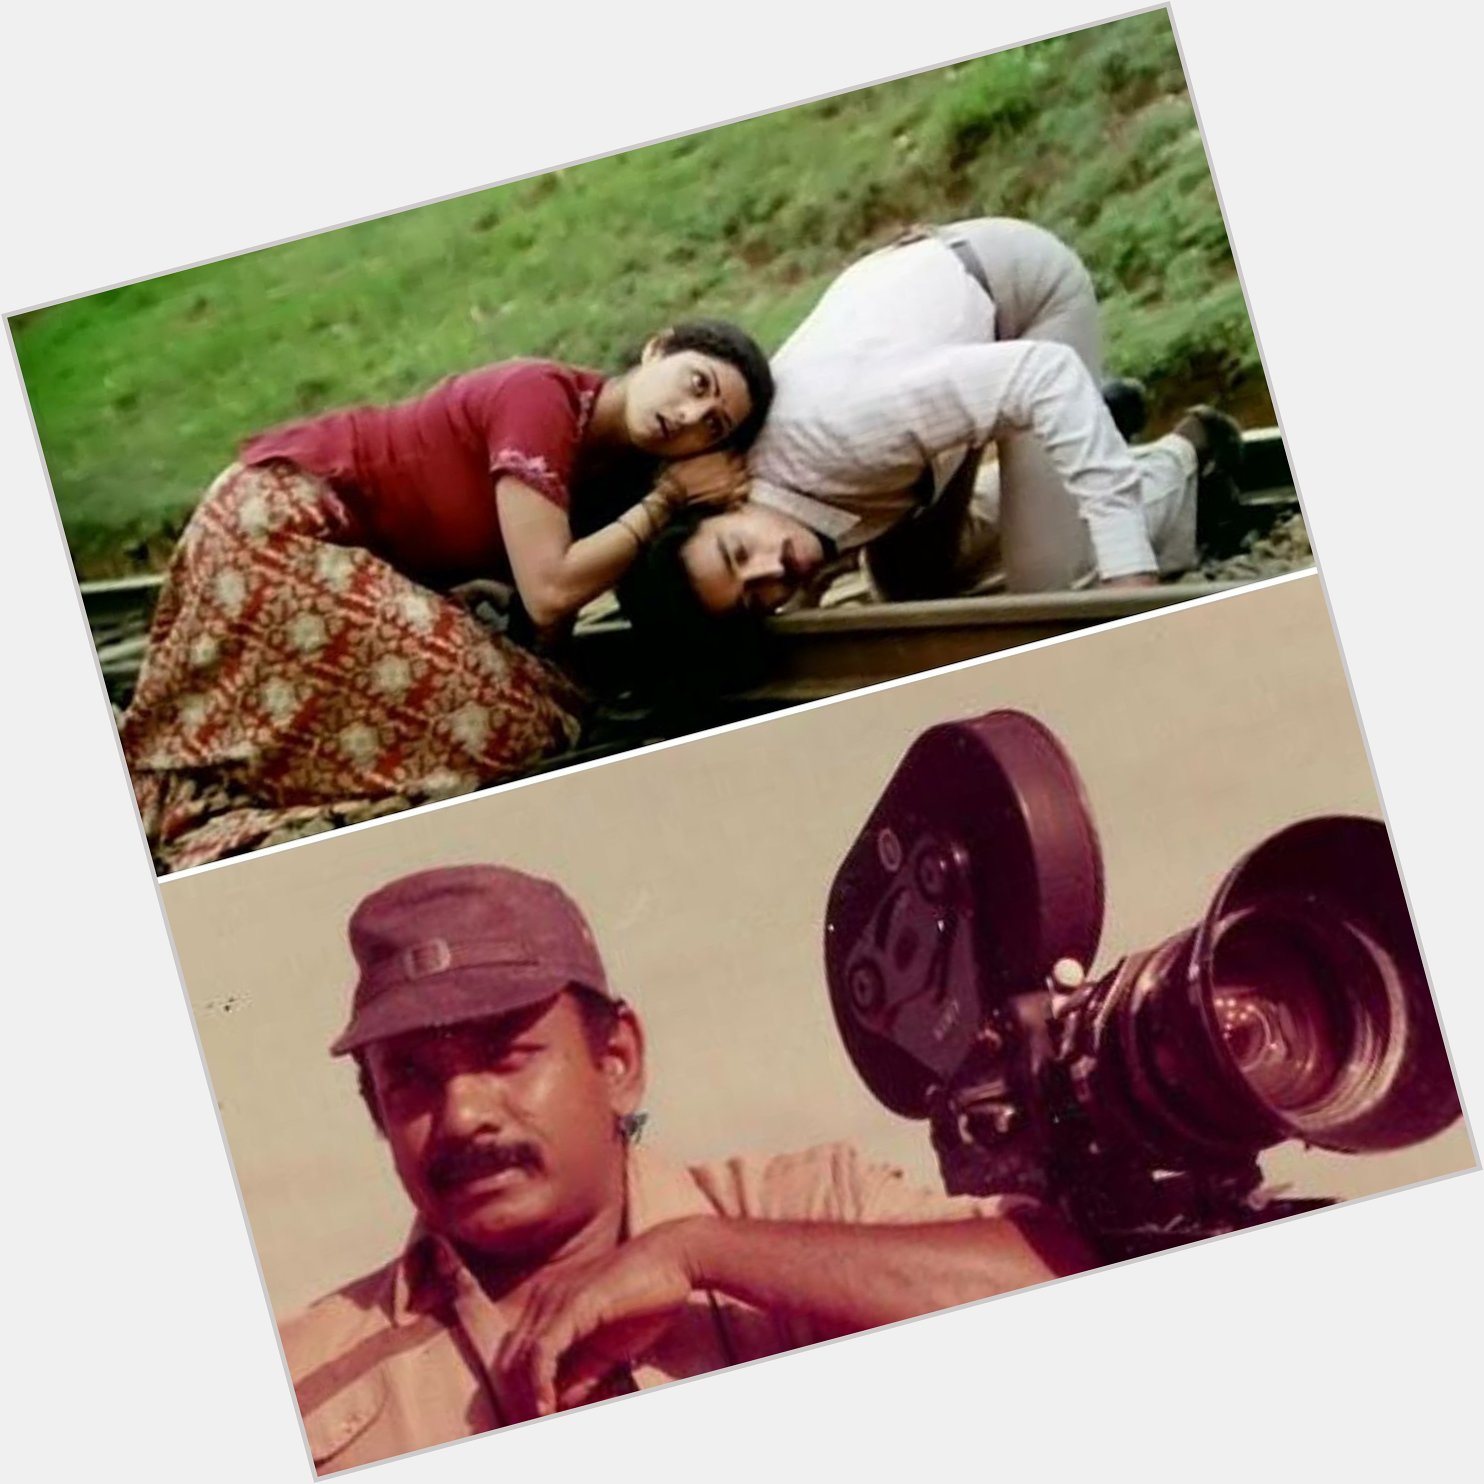 Happy birthday Balu Mahendra sir!

Movie name: Moondram Pirai/ Sadma 